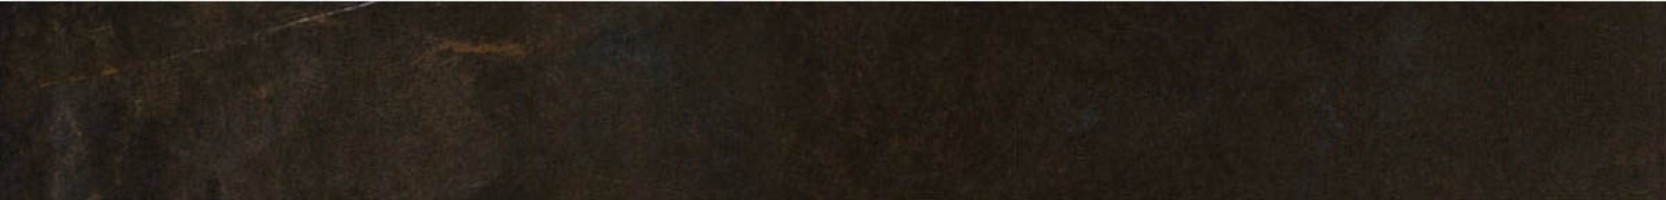 Бордюр Italon Listello Charme Black Lap 7.2x60 610090000730